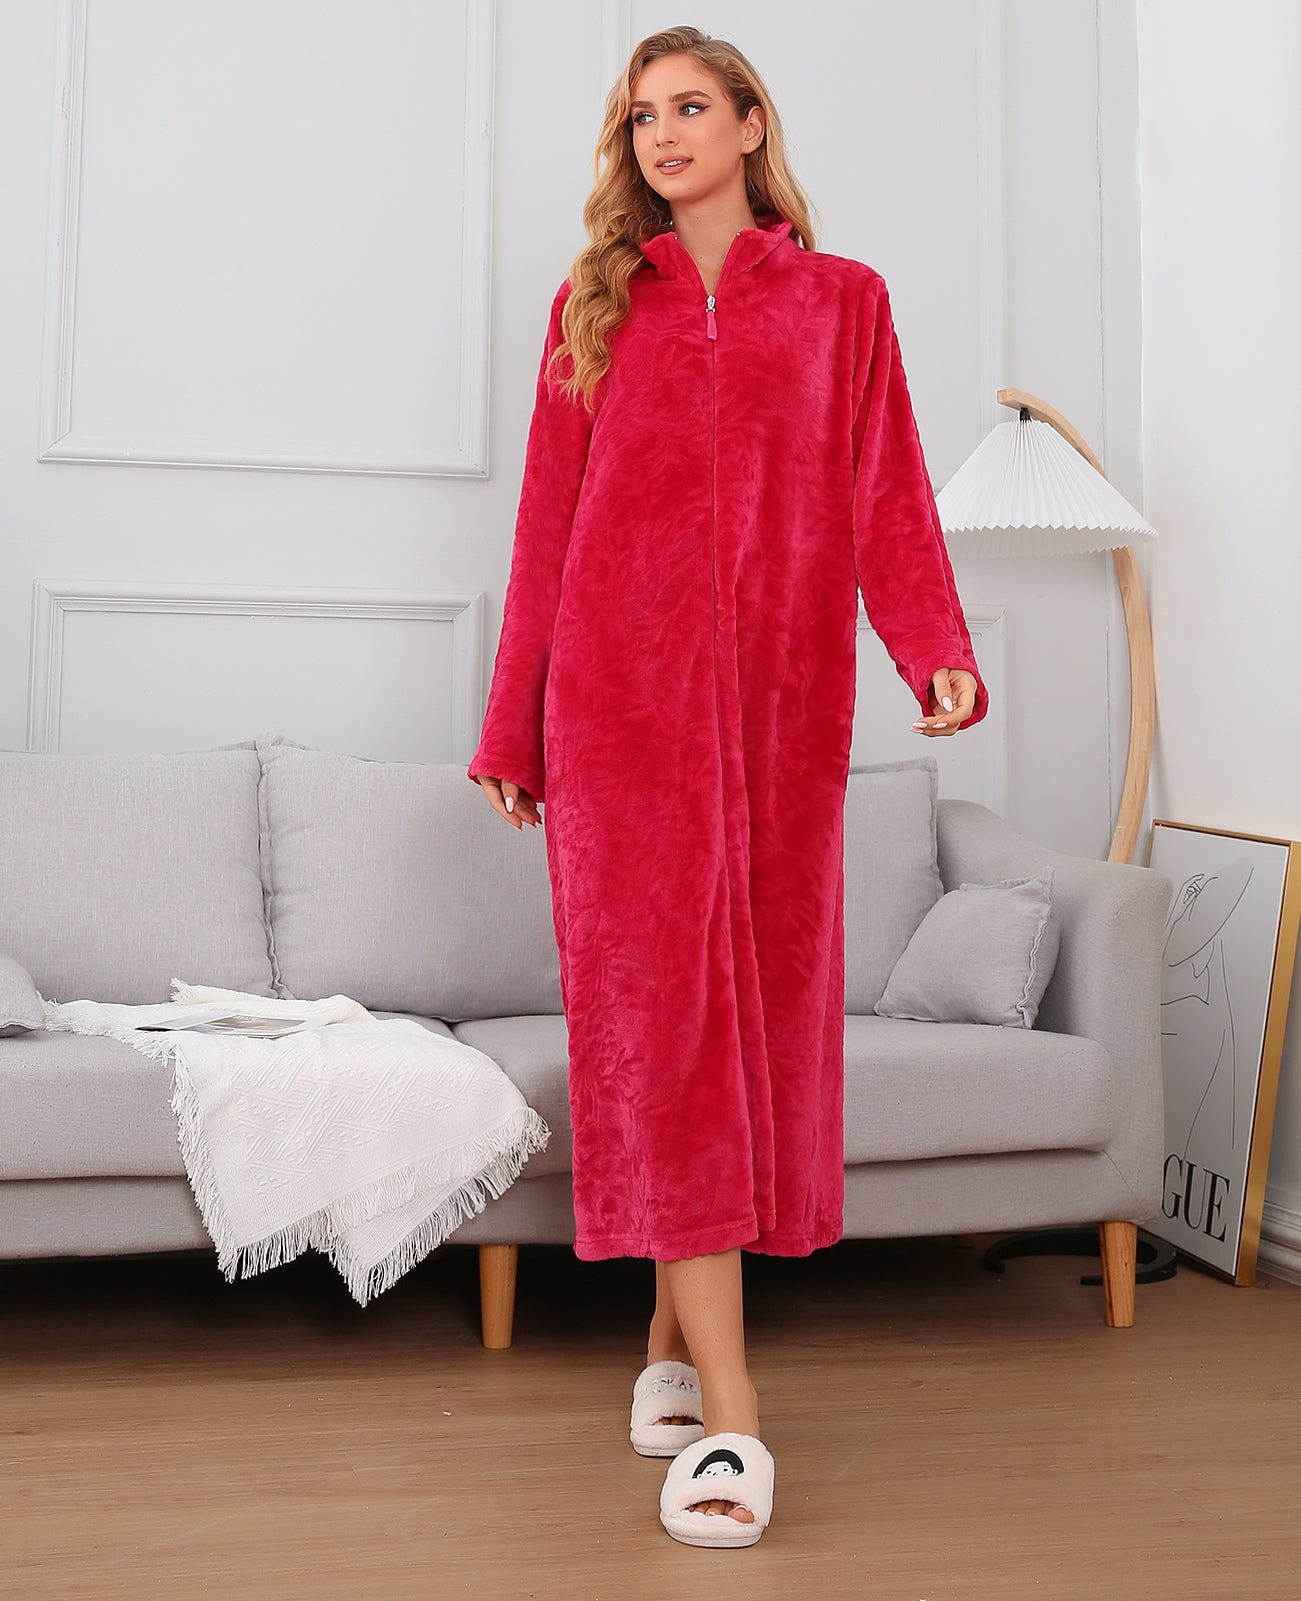 Women's Souped-Up Fleece Zip Up Robe